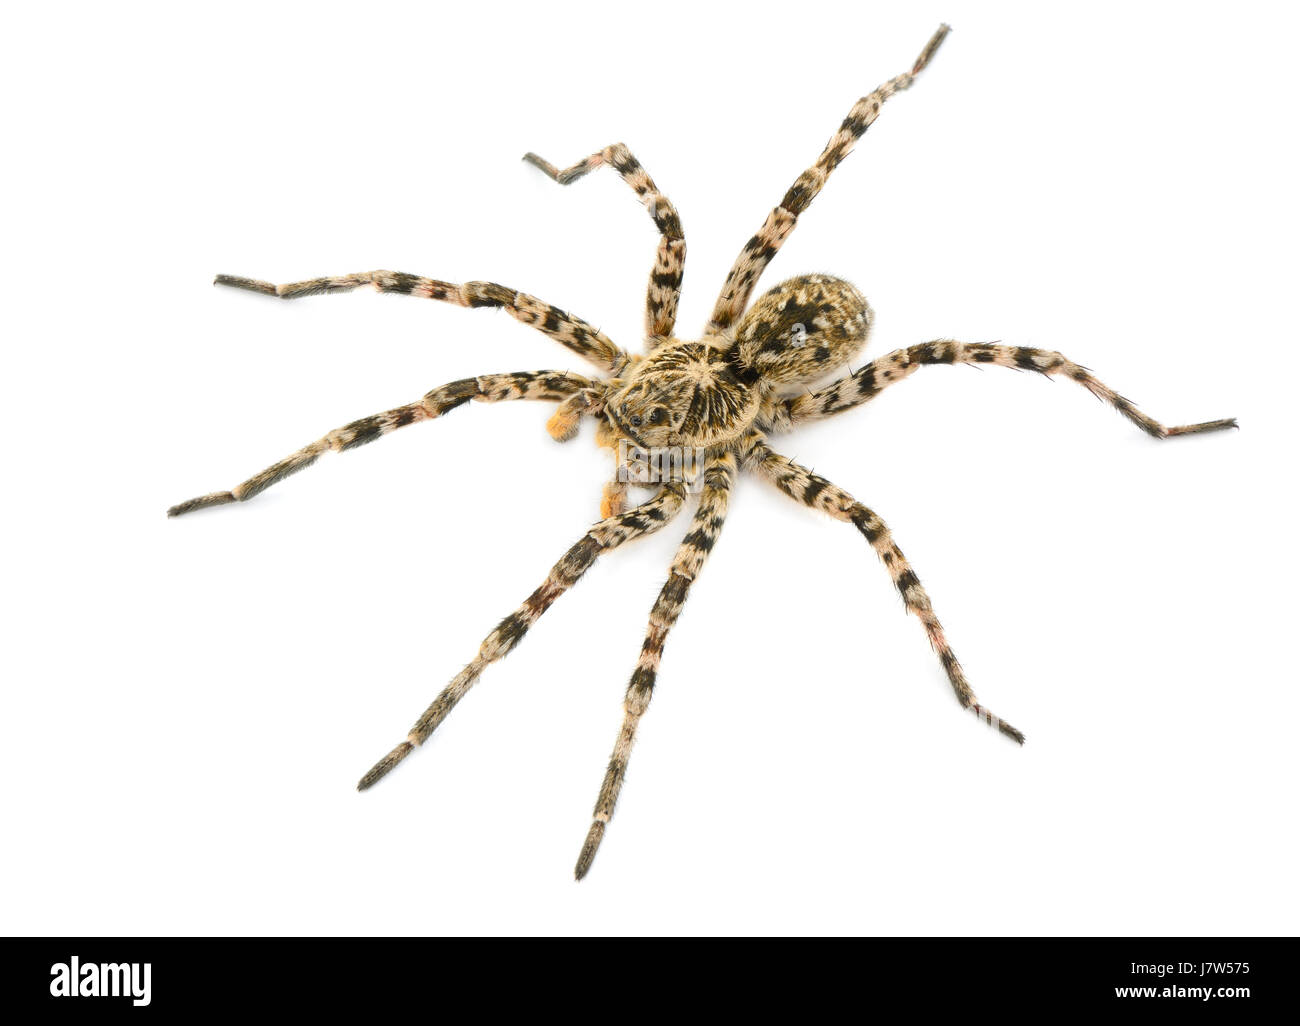 tarantulas spider isolated on white background Stock Photo